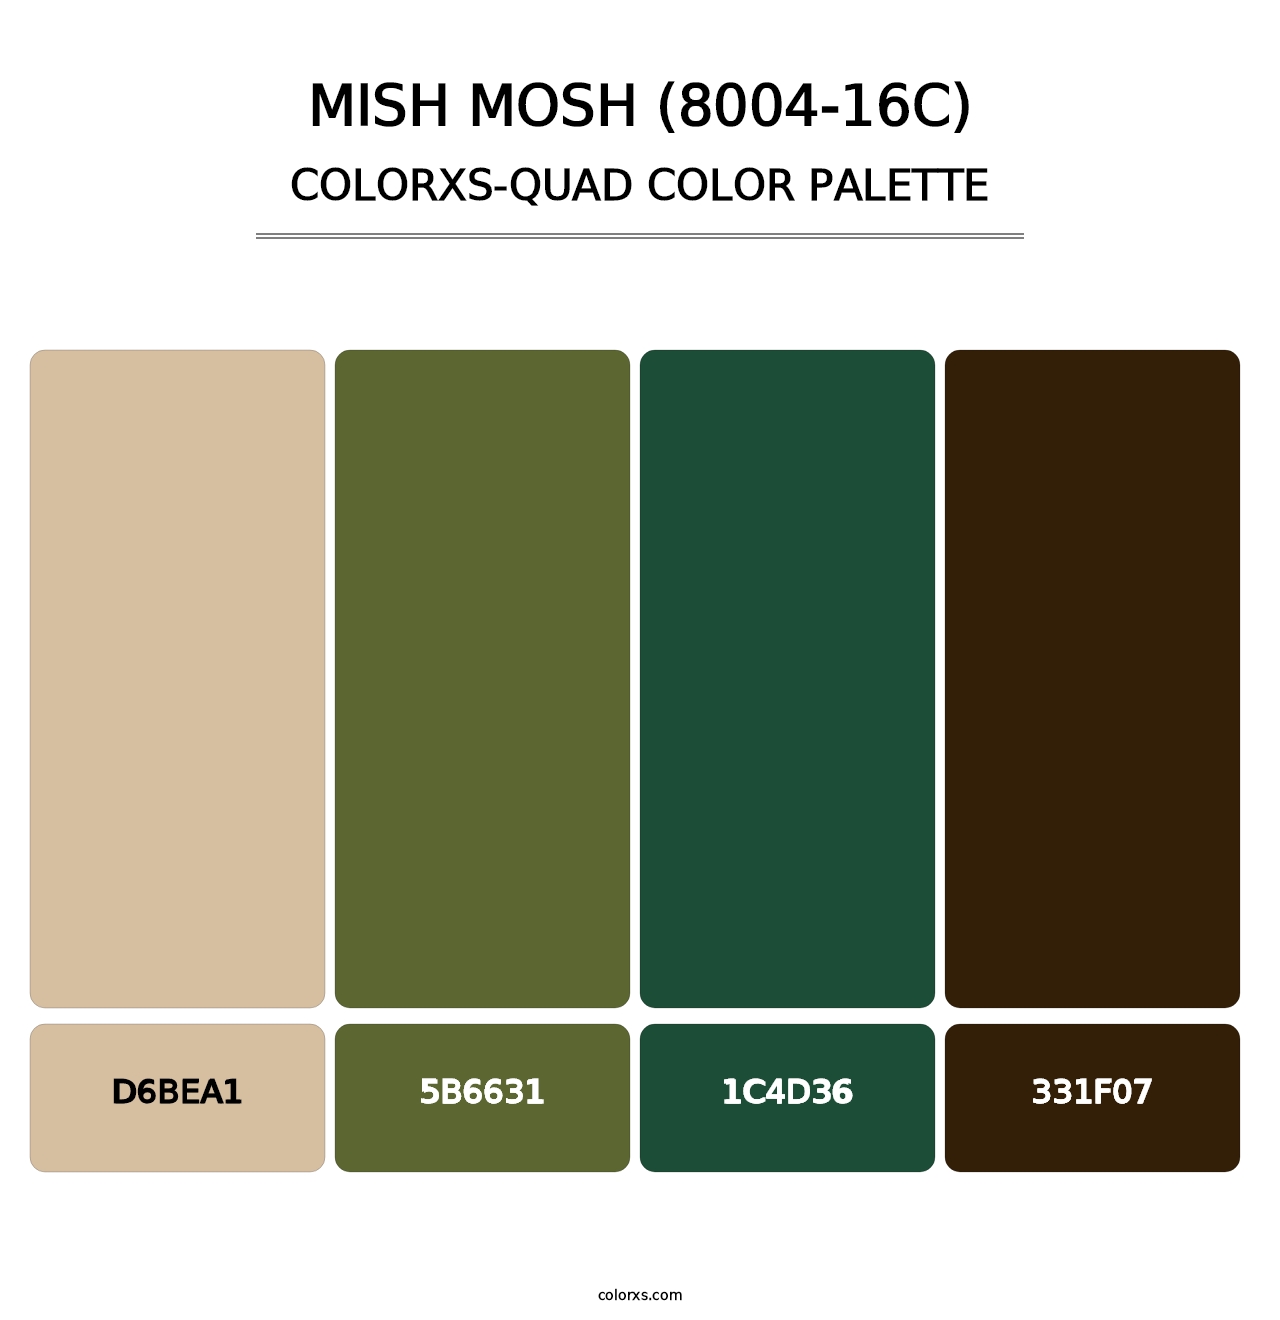 Mish Mosh (8004-16C) - Colorxs Quad Palette